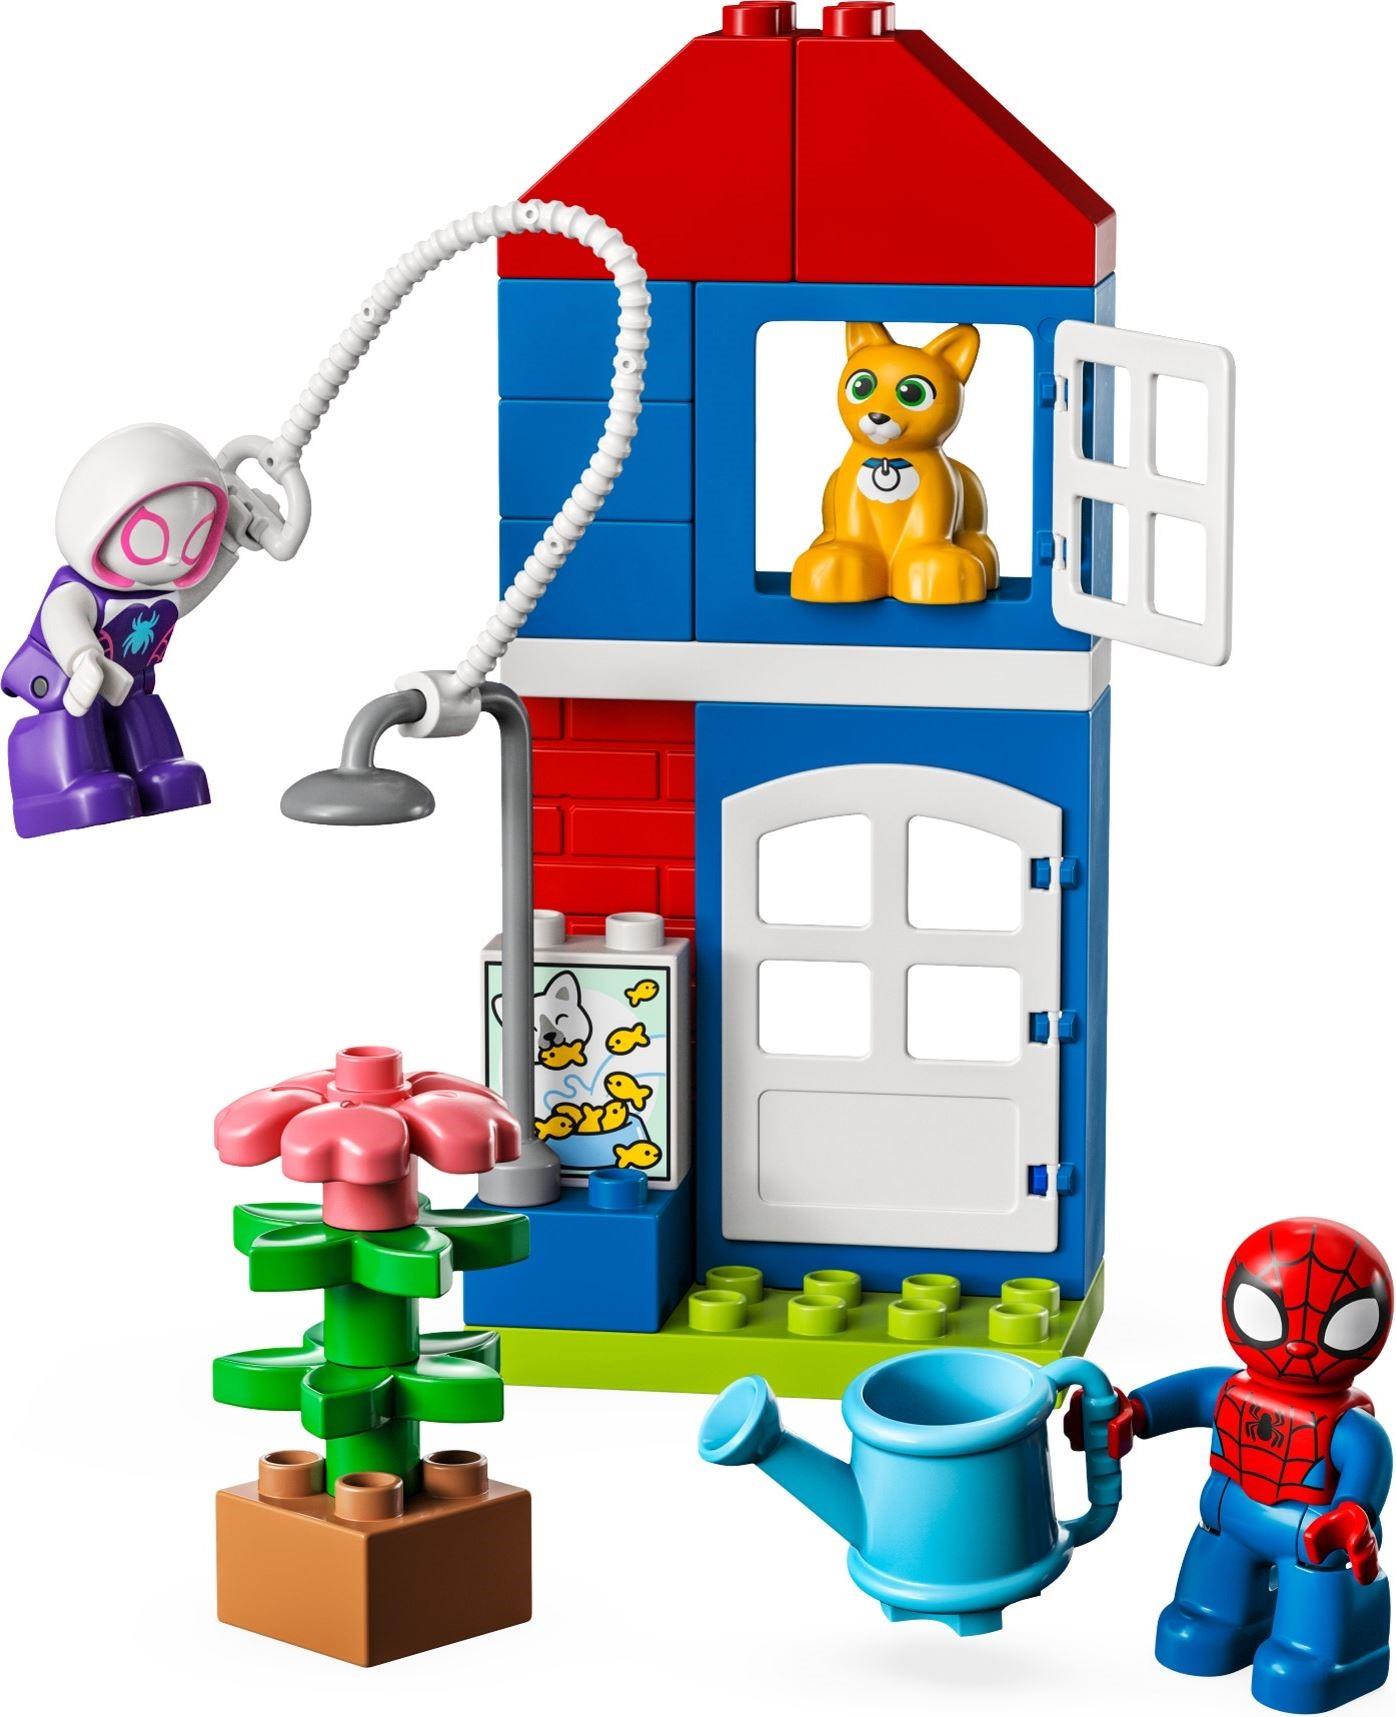 LEGO 10995 Duplo Spider-Man's House